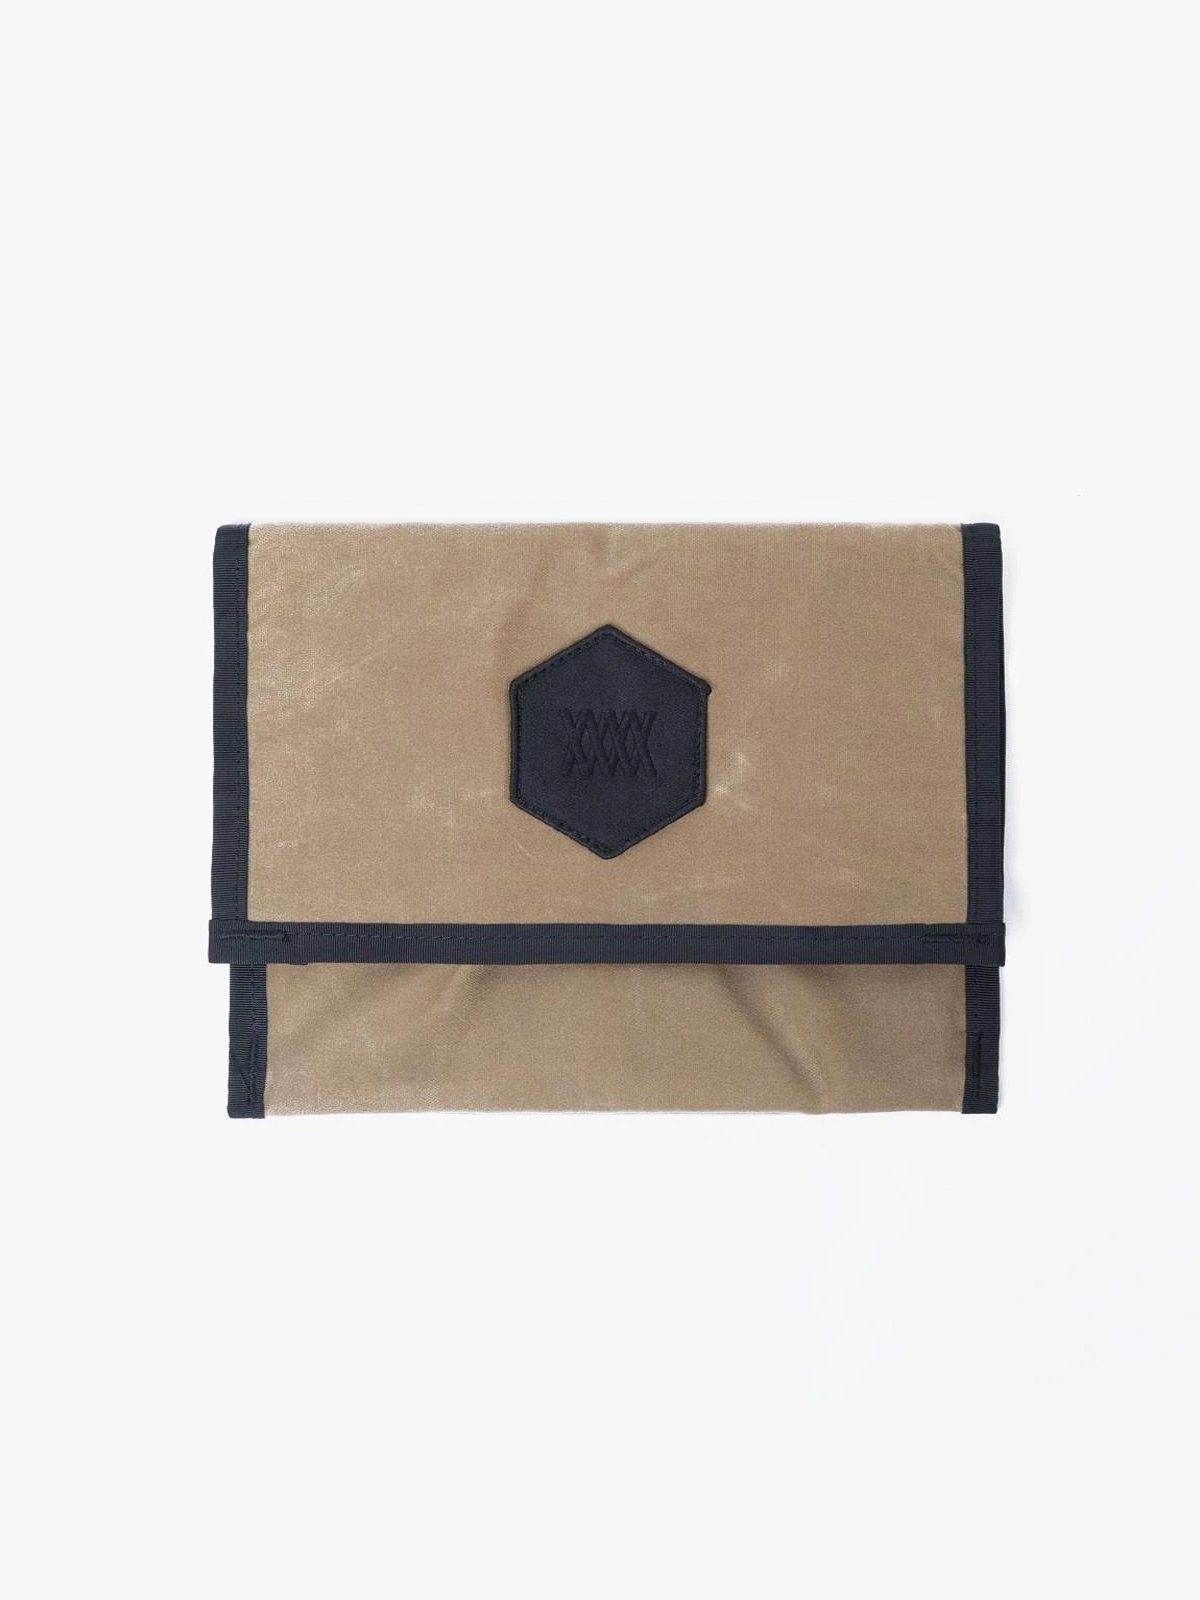 Arkiv Mini Folio by Mission Workshop - Weatherproof Bags & Technical Apparel - San Francisco & Los Angeles - Construit pour durer - Garanti pour toujours